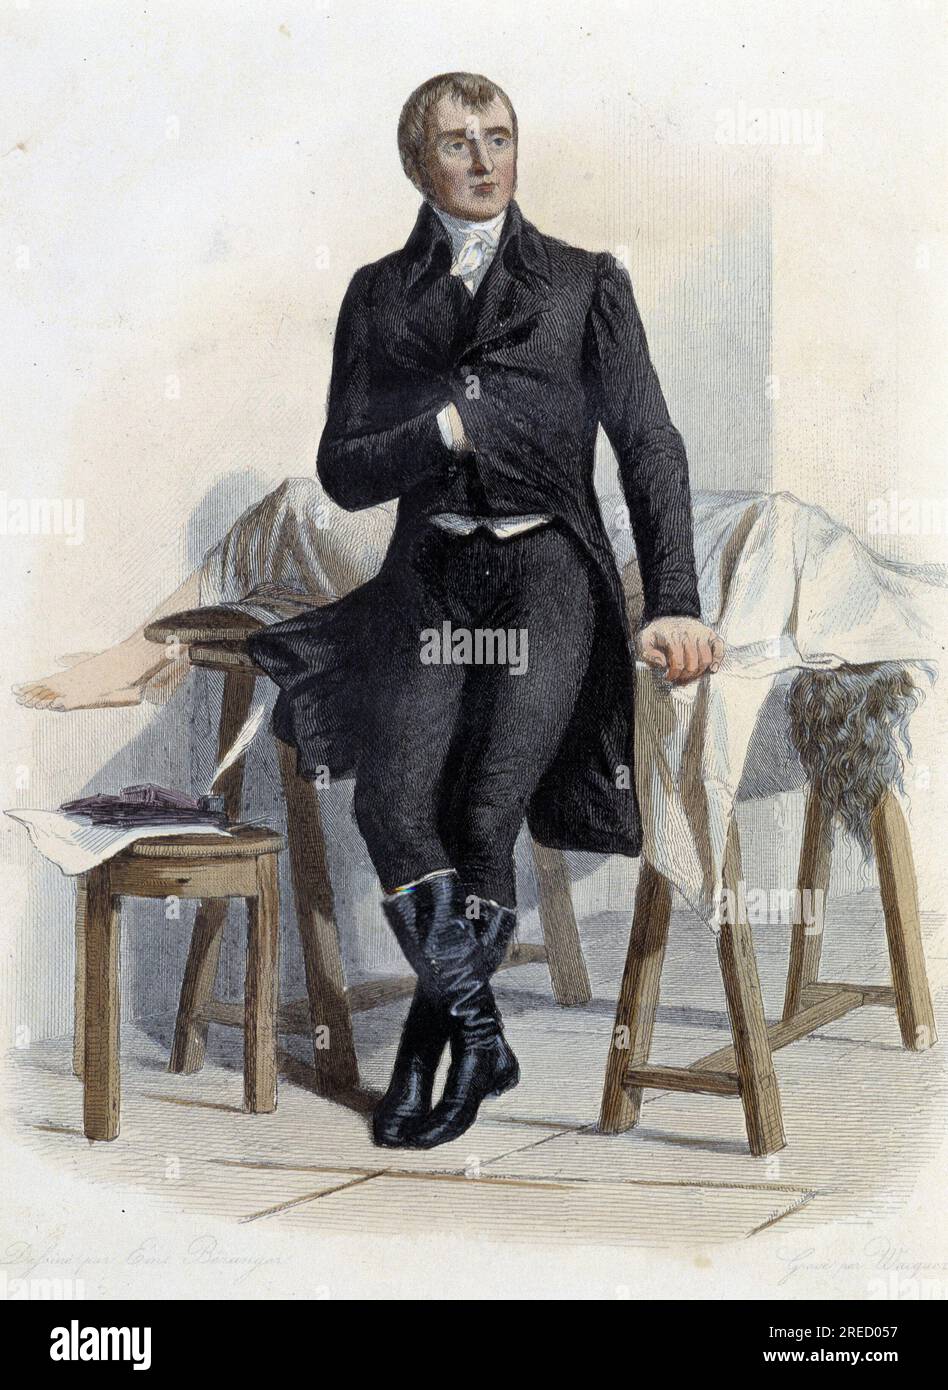 Marie Francois Xavier Bichat (1771-1802), medecin biologiste et physiologiste francais- in 'Le Plutarque francais', par Mennechet, Paris, 1844-47 Stock Photo